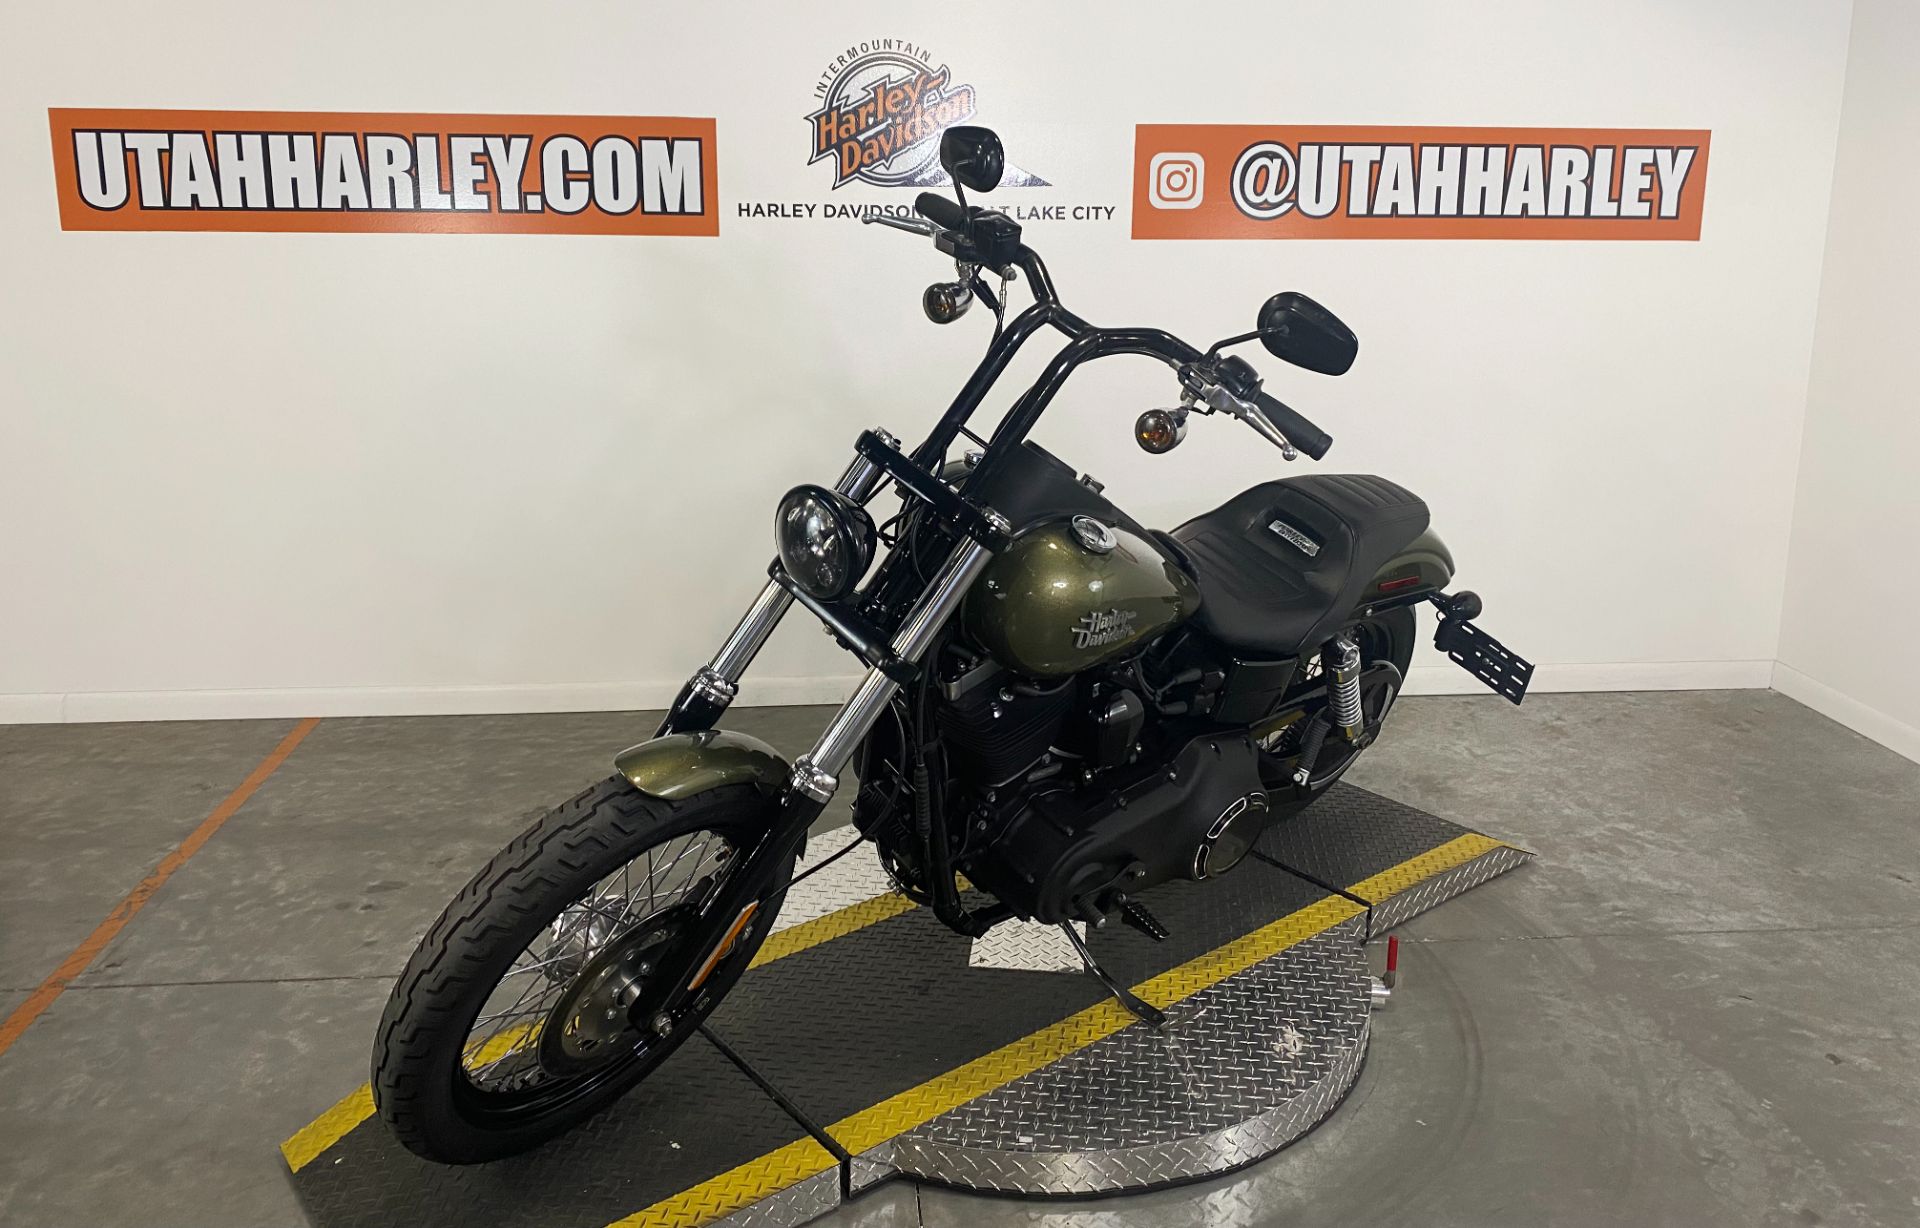 2017 Harley-Davidson Street Bob® in Salt Lake City, Utah - Photo 4